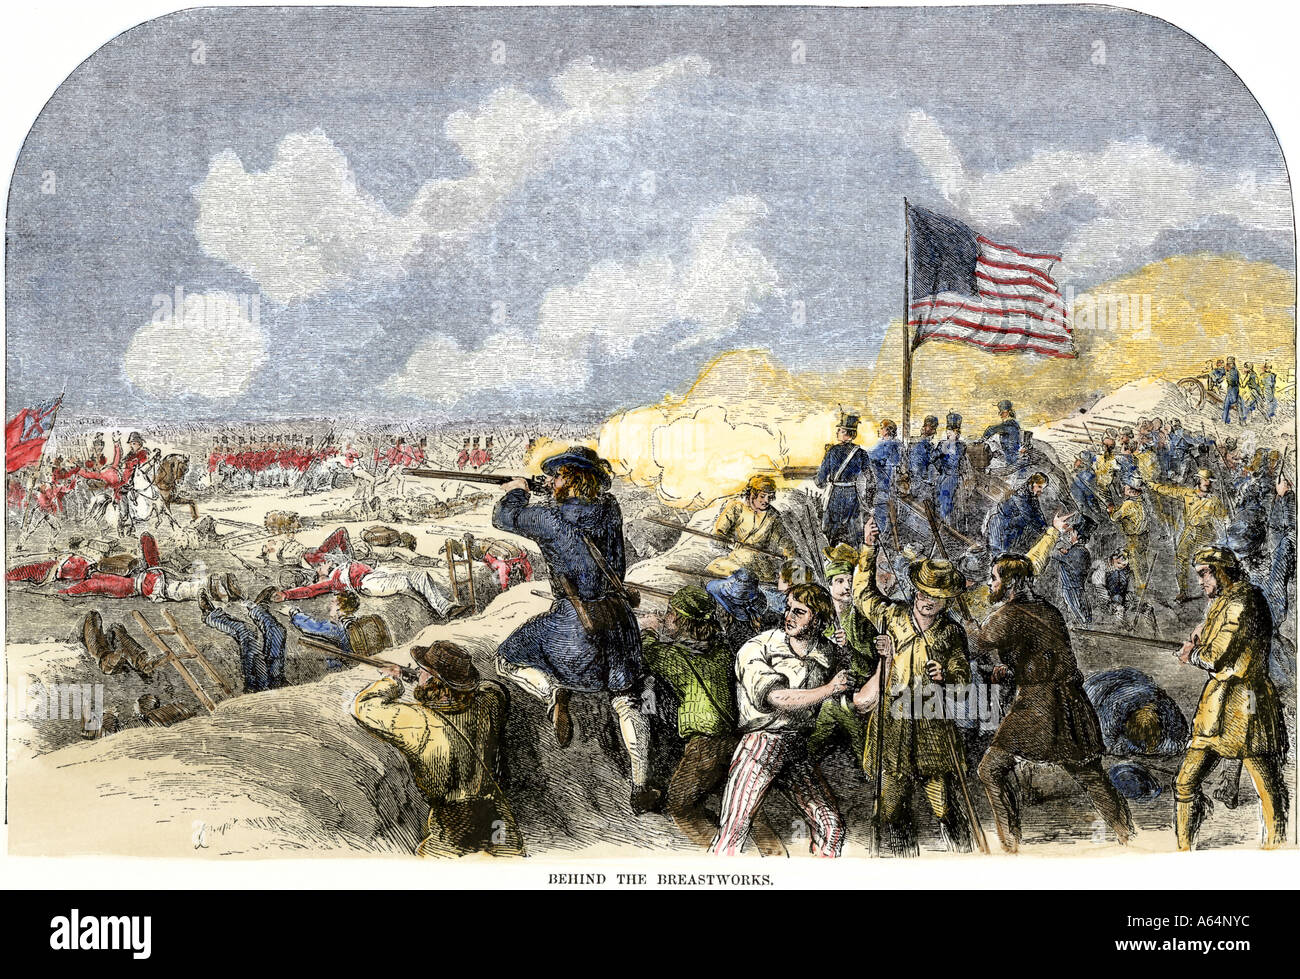 Los estadounidenses detrás del breastworks disparando sobre los británicos en la batalla de New Orleans en 1815, al final de la guerra de 1812. Xilografía coloreada a mano Foto de stock